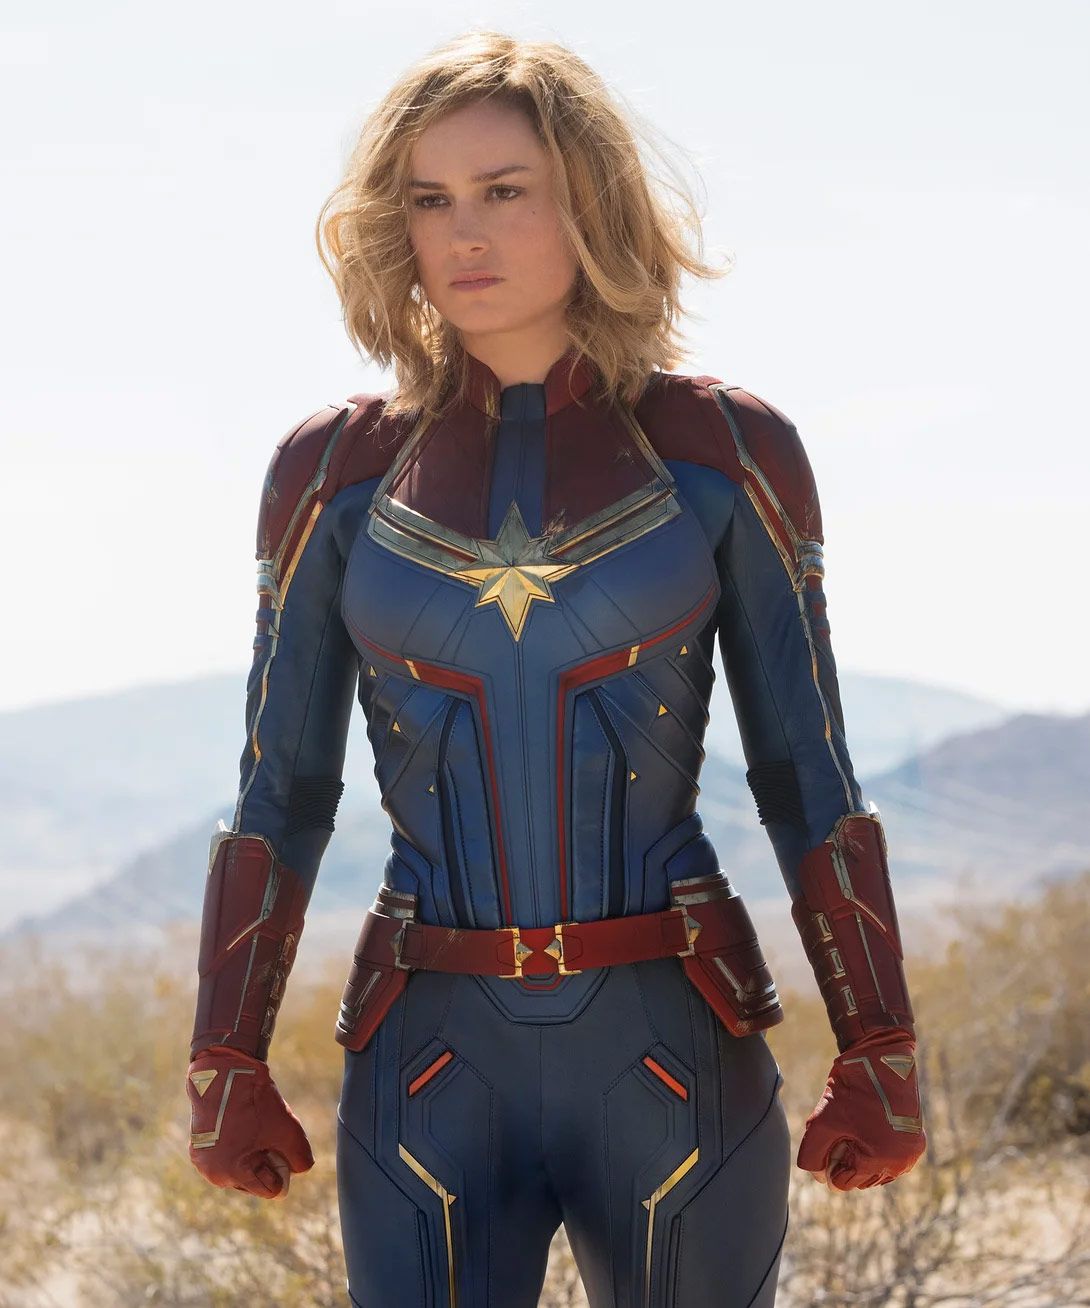 Brie Larson Unsure If Fans Want More 'Captain Marvel'